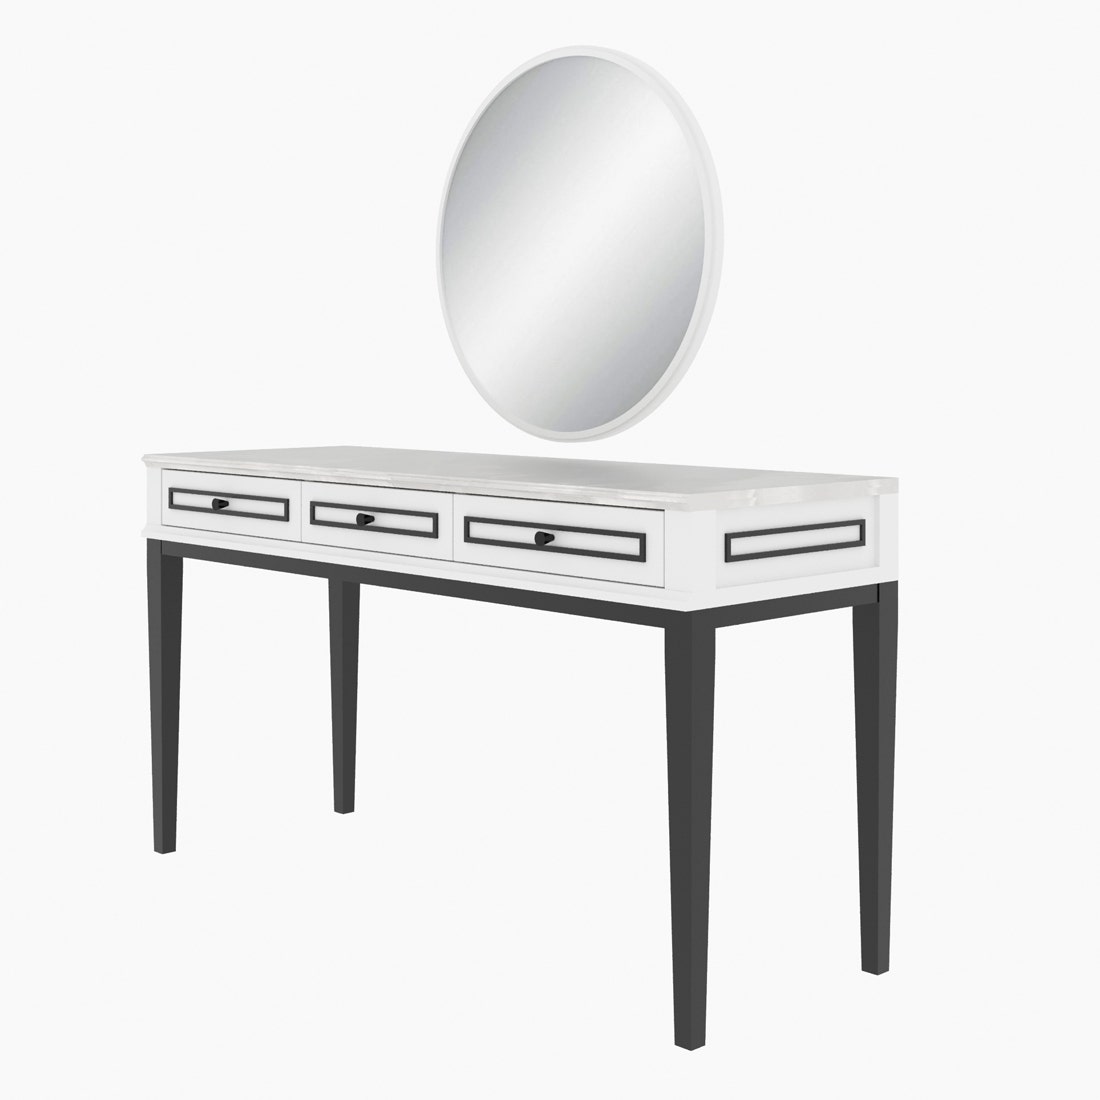 โต๊ะเครื่องแป้งขนาด 140 ซม. รุ่น Eterno สีขาว3